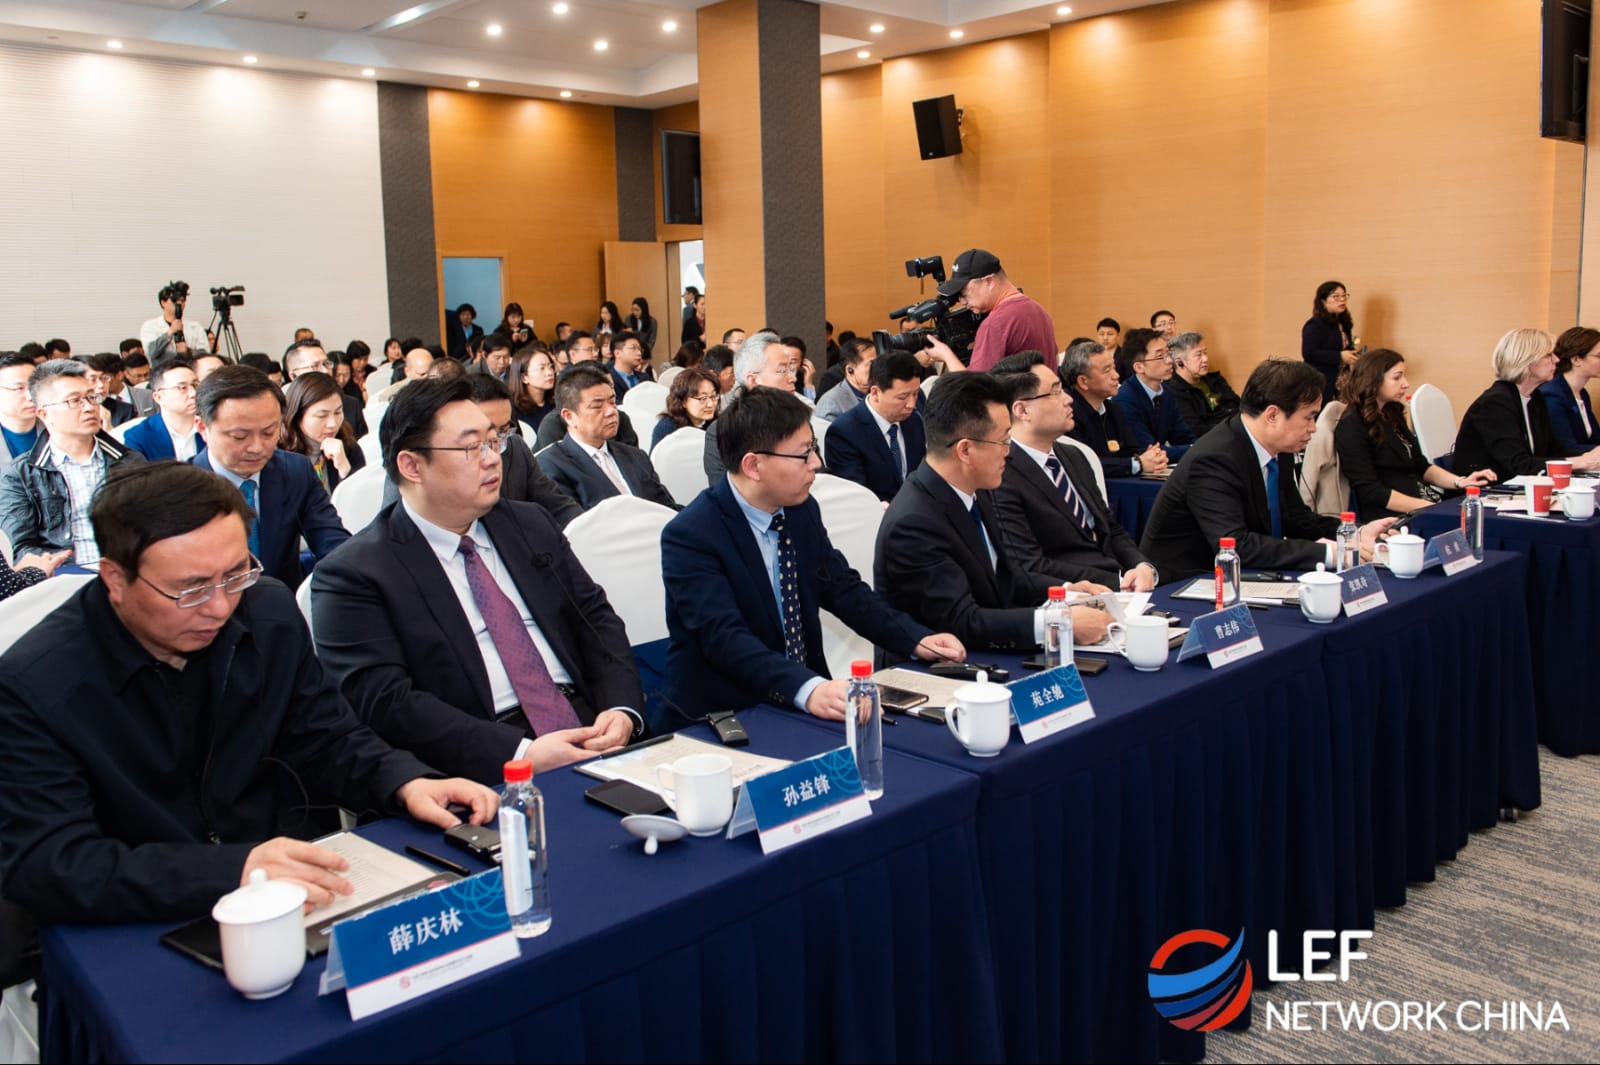 Norisinājās LTRK projekta LEF Network to China ietvaros radītā kokapstrādes nozares uzņēmumu demo centra atklāšana